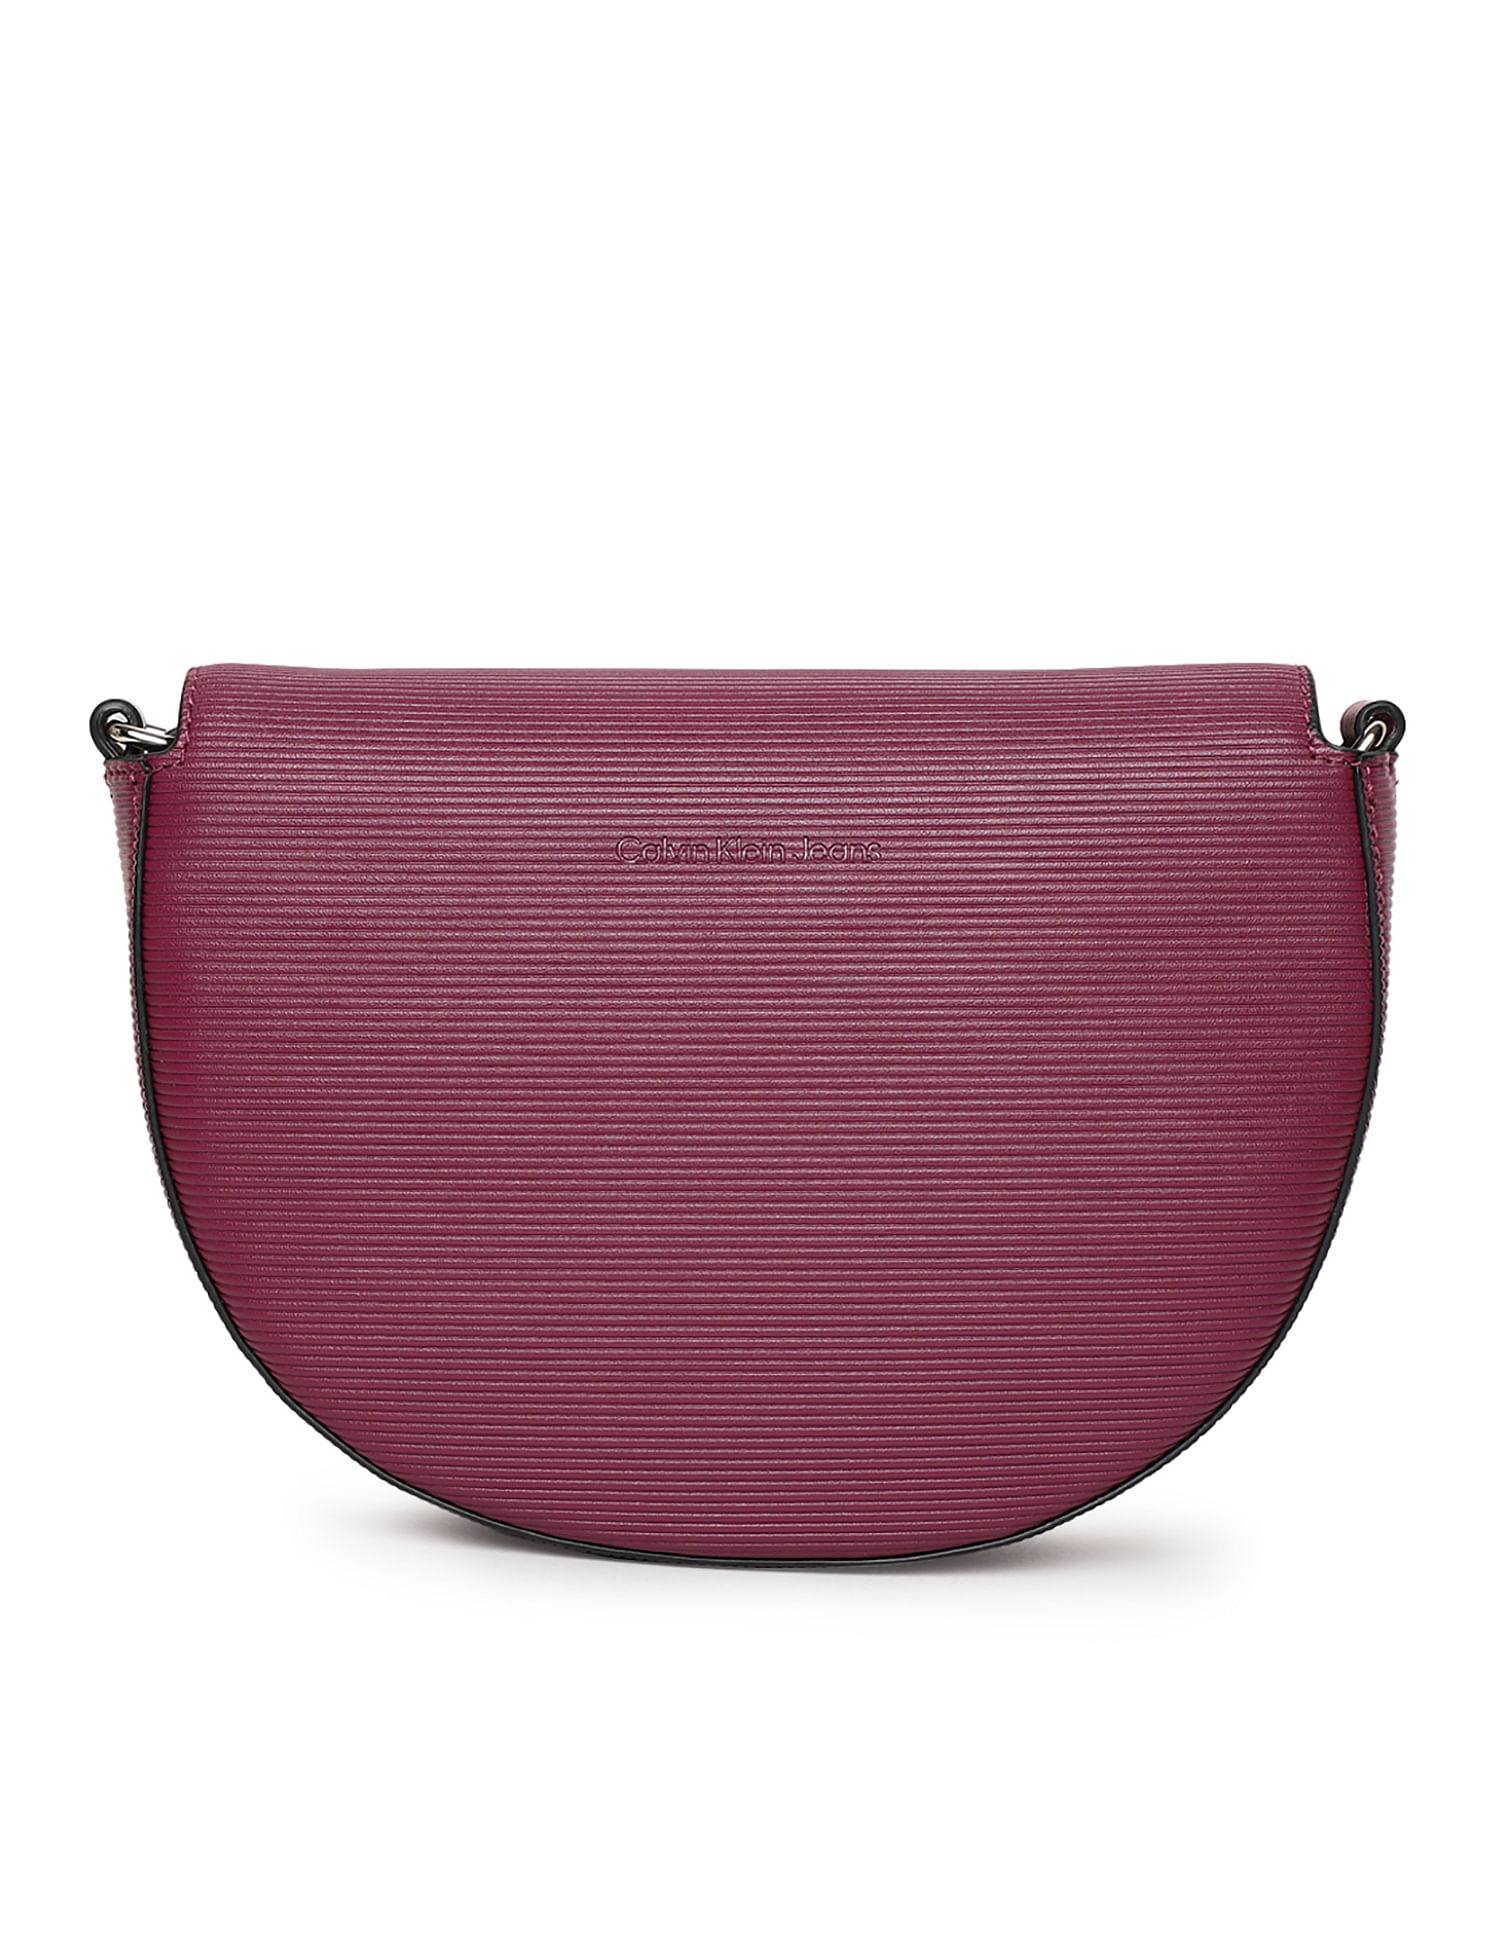 Amazon.com: Calvin Klein Purses And Handbags